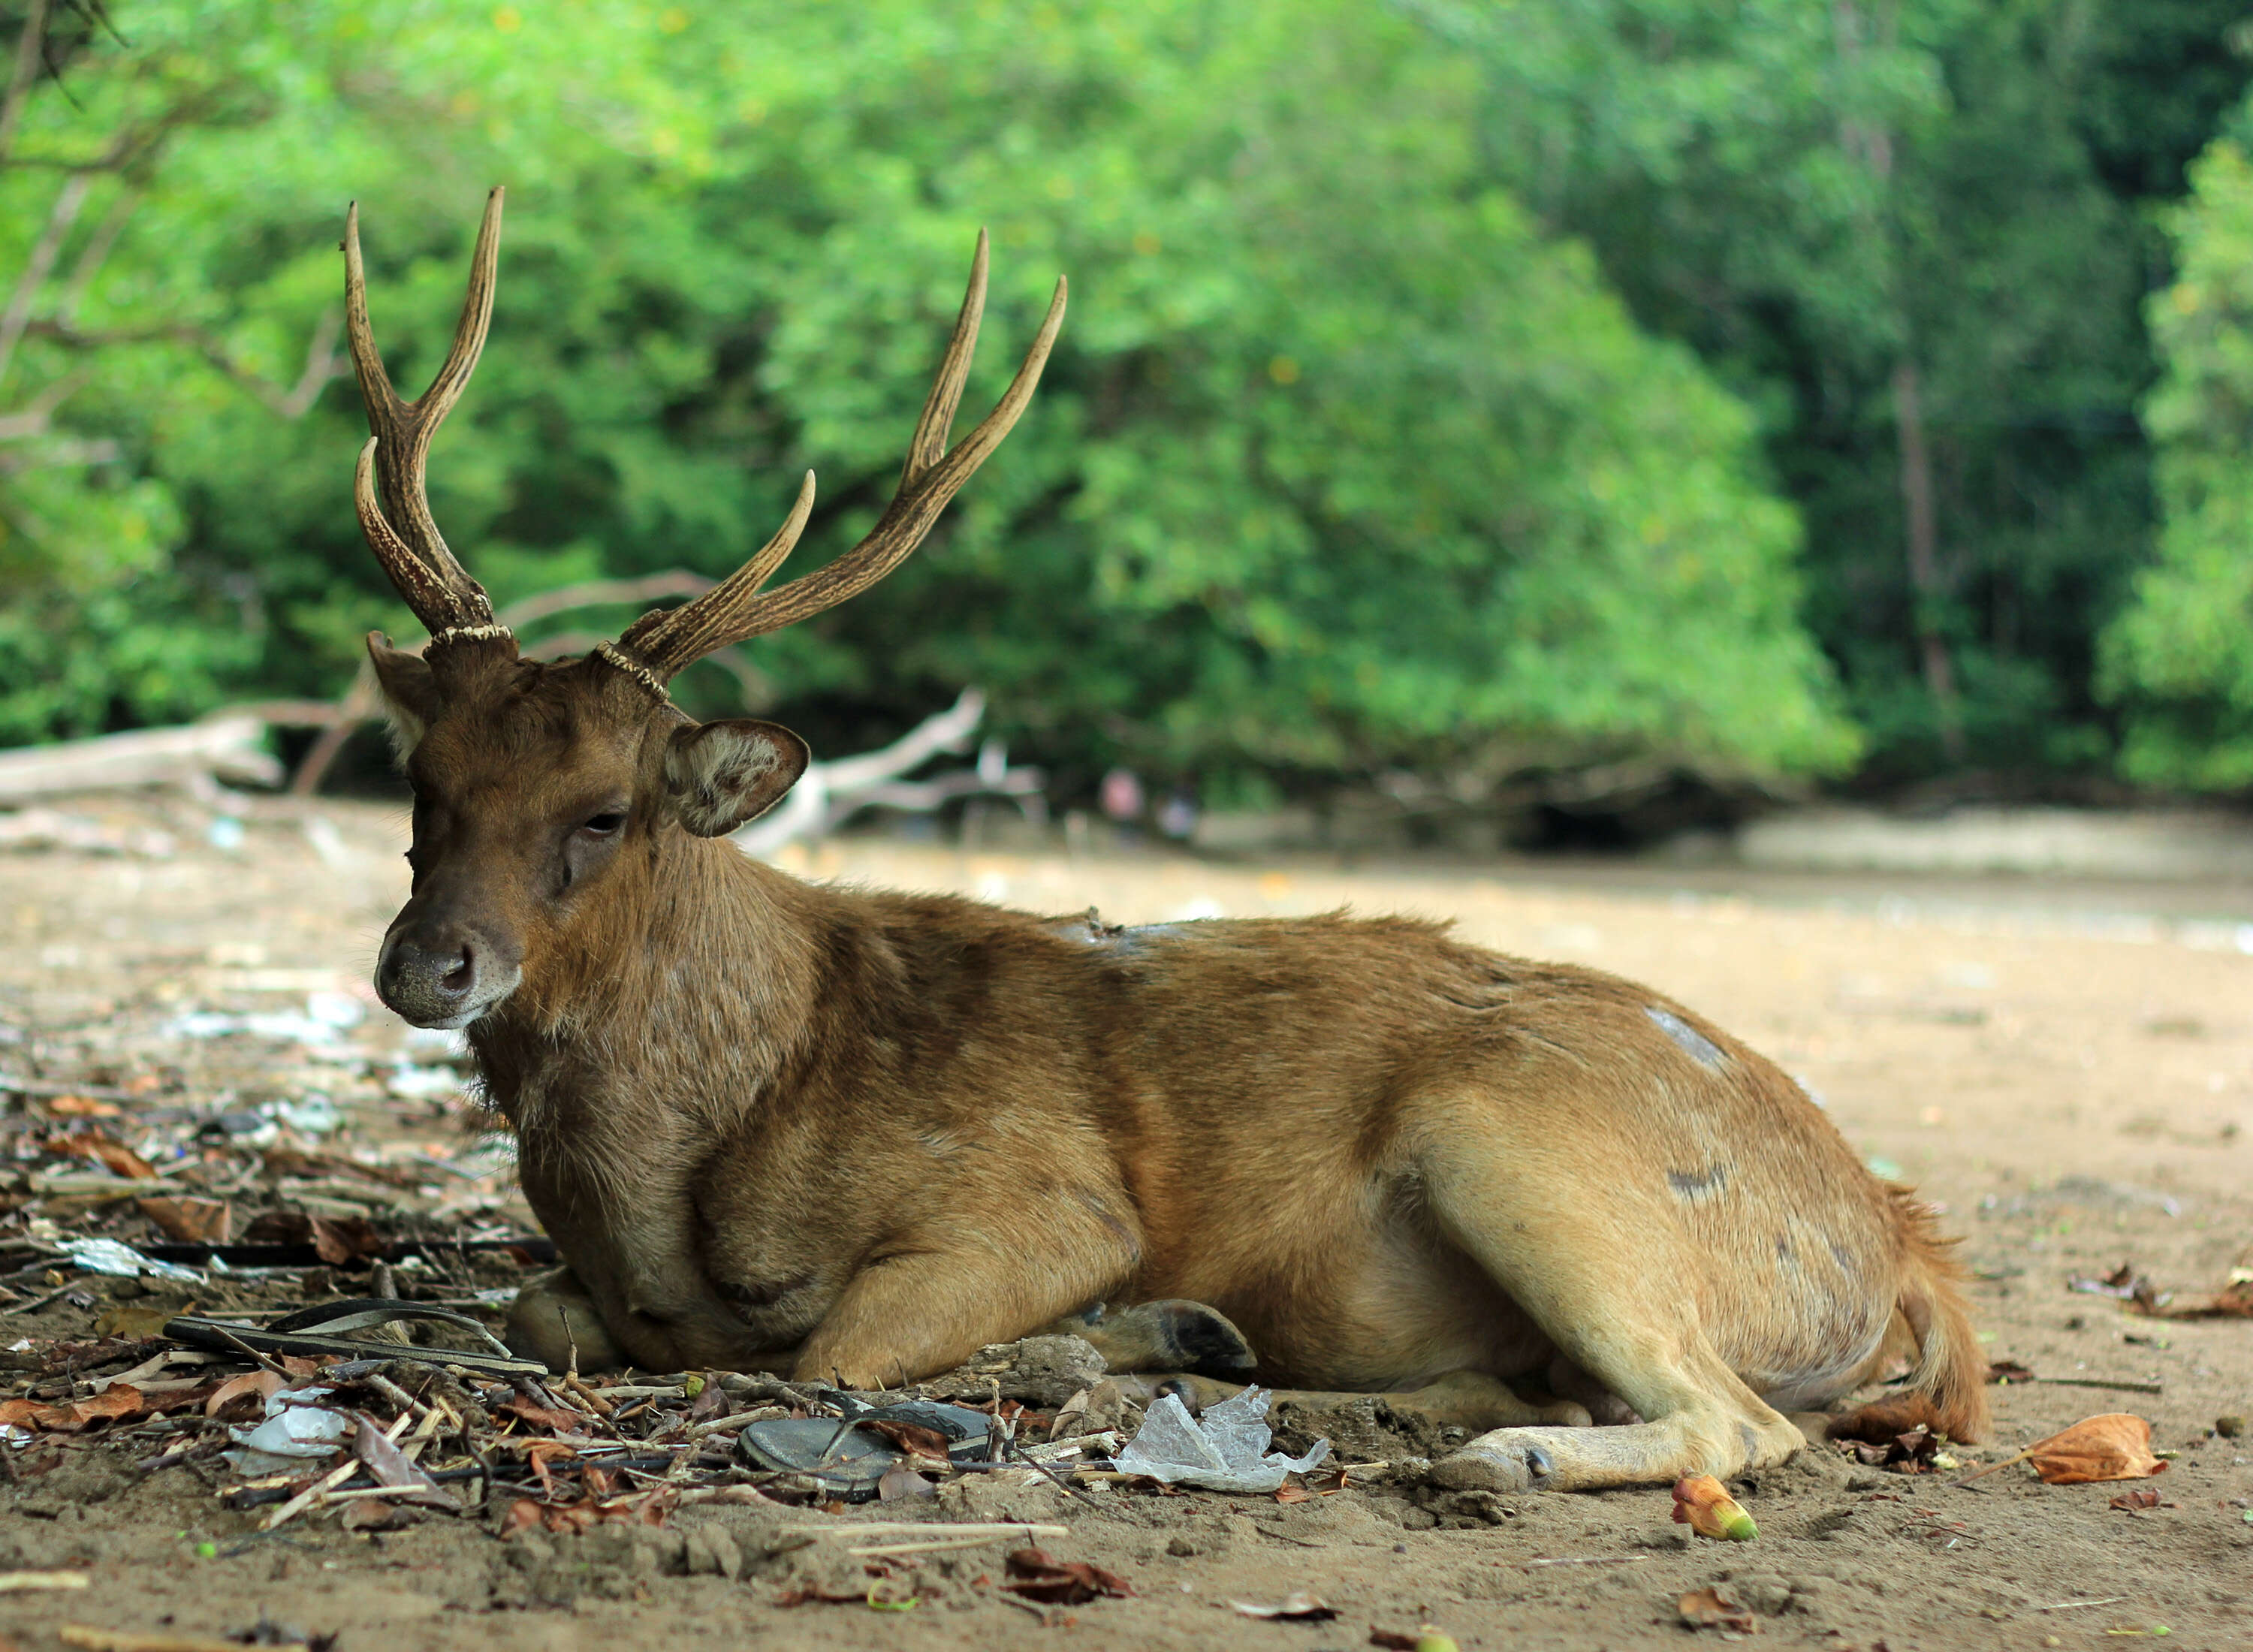 Image of Javan Deer